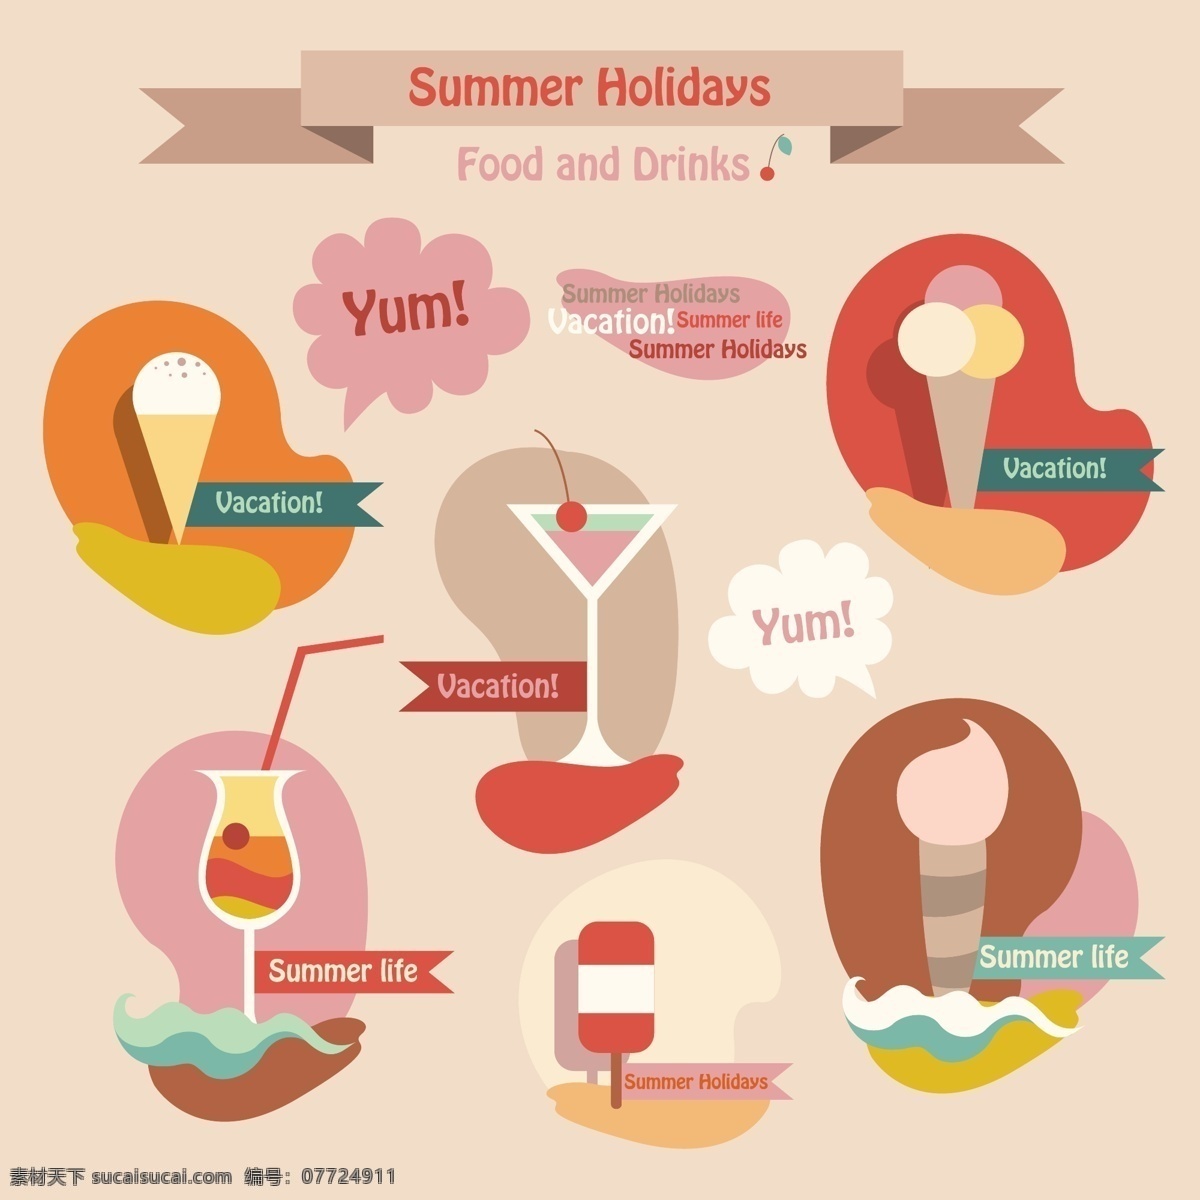 暑假 旅行 向量 食物 度假 假期 旅游 食品 矢量食物 夏季 夏天 矢量图 日常生活